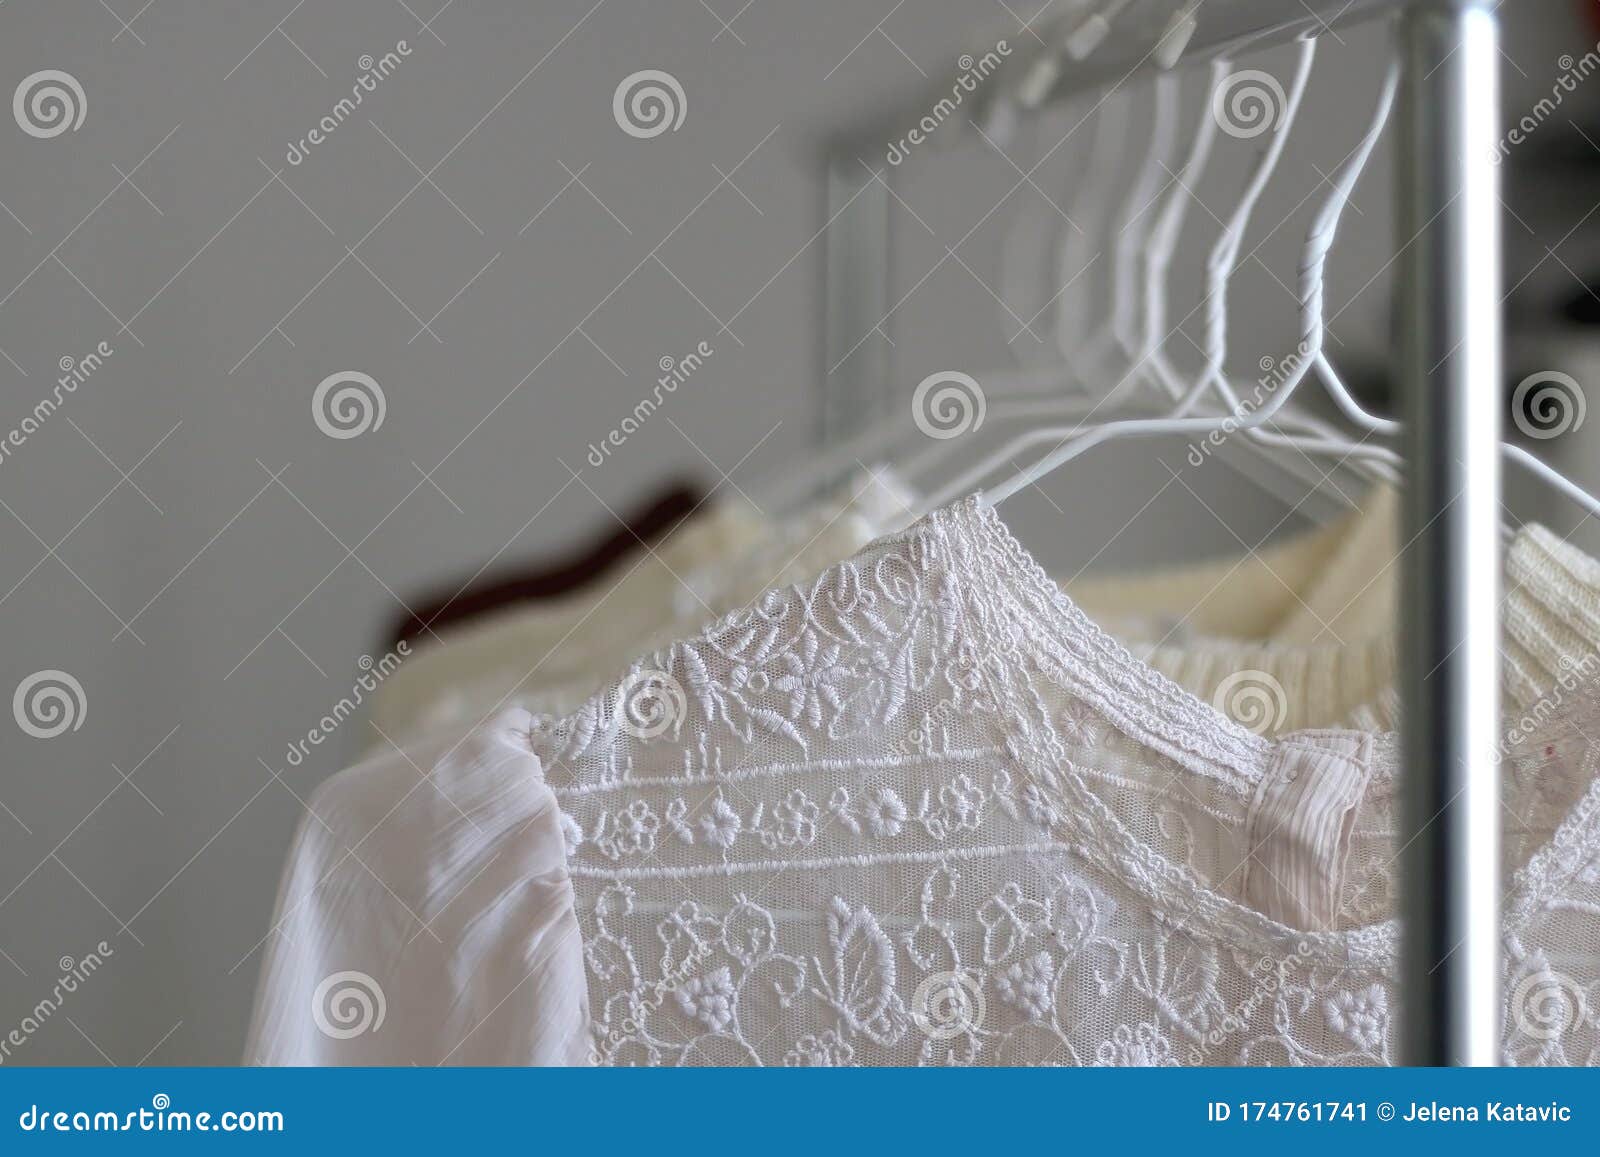 Capsule Wardrobe stock image. Image of inside, lace - 174761741